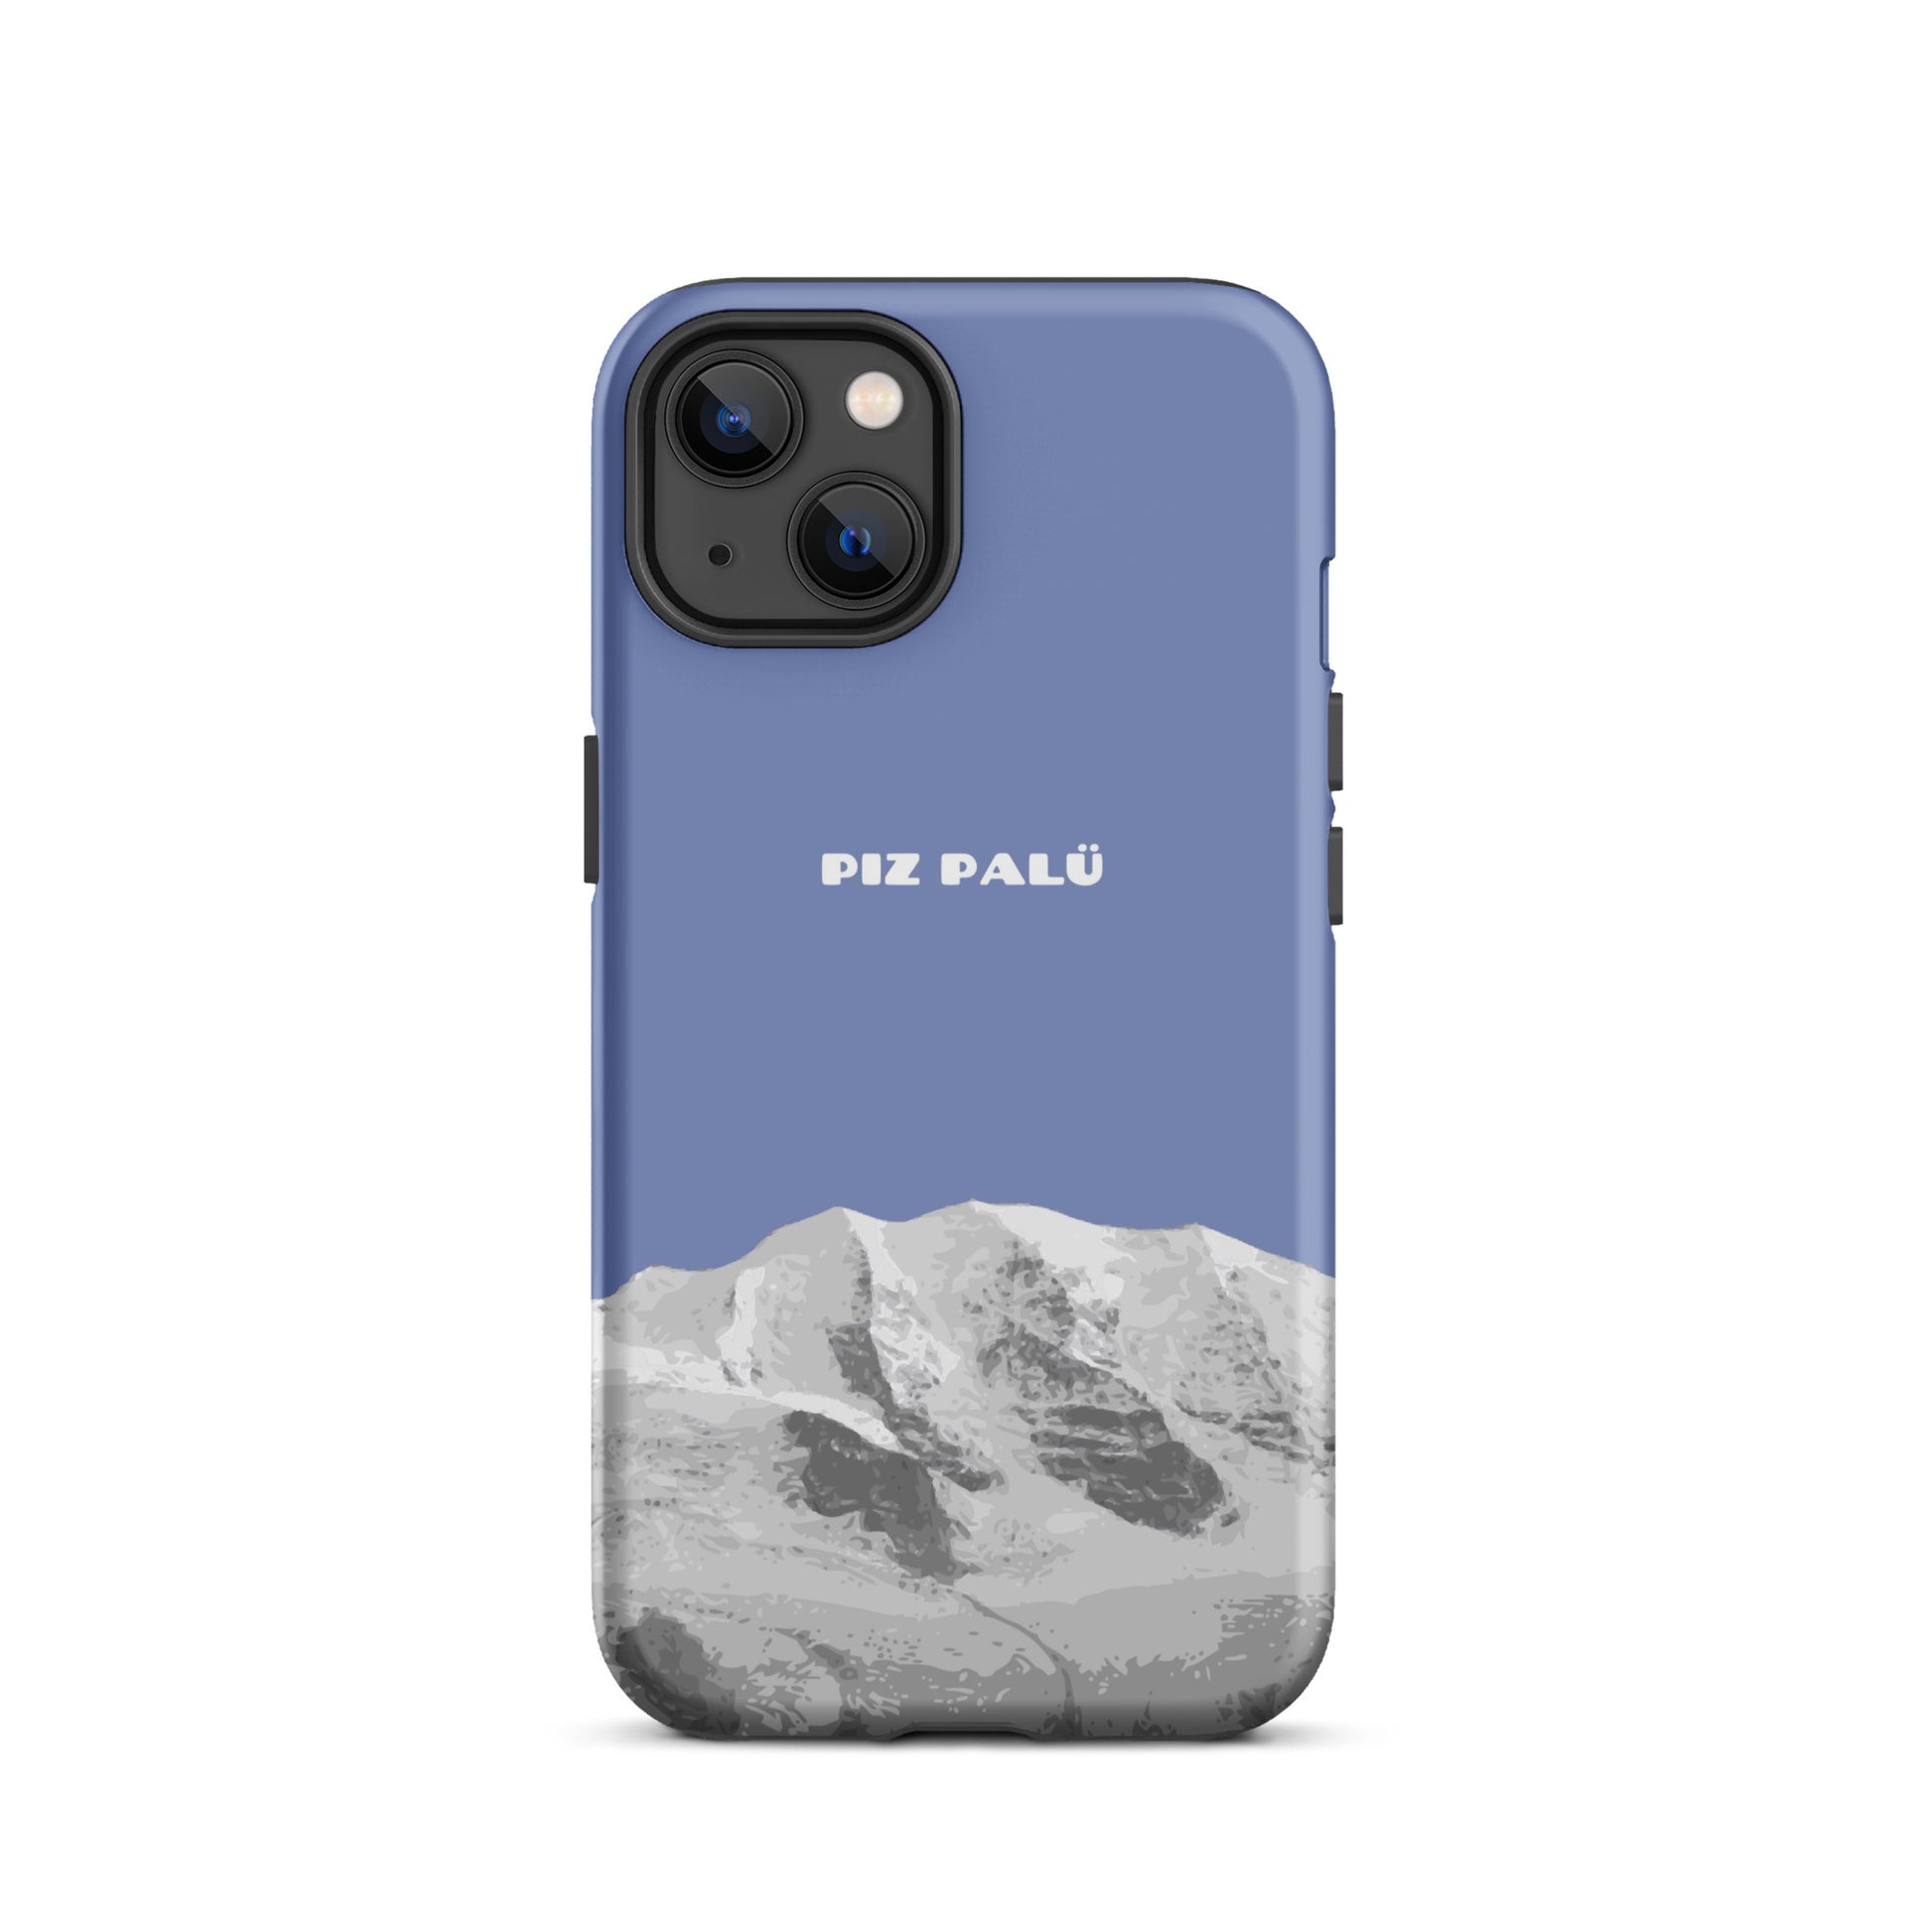 Hülle für das iPhone 13 von Apple in der Farbe Pastellblau, dass den Piz Palü in Graubünden zeigt.